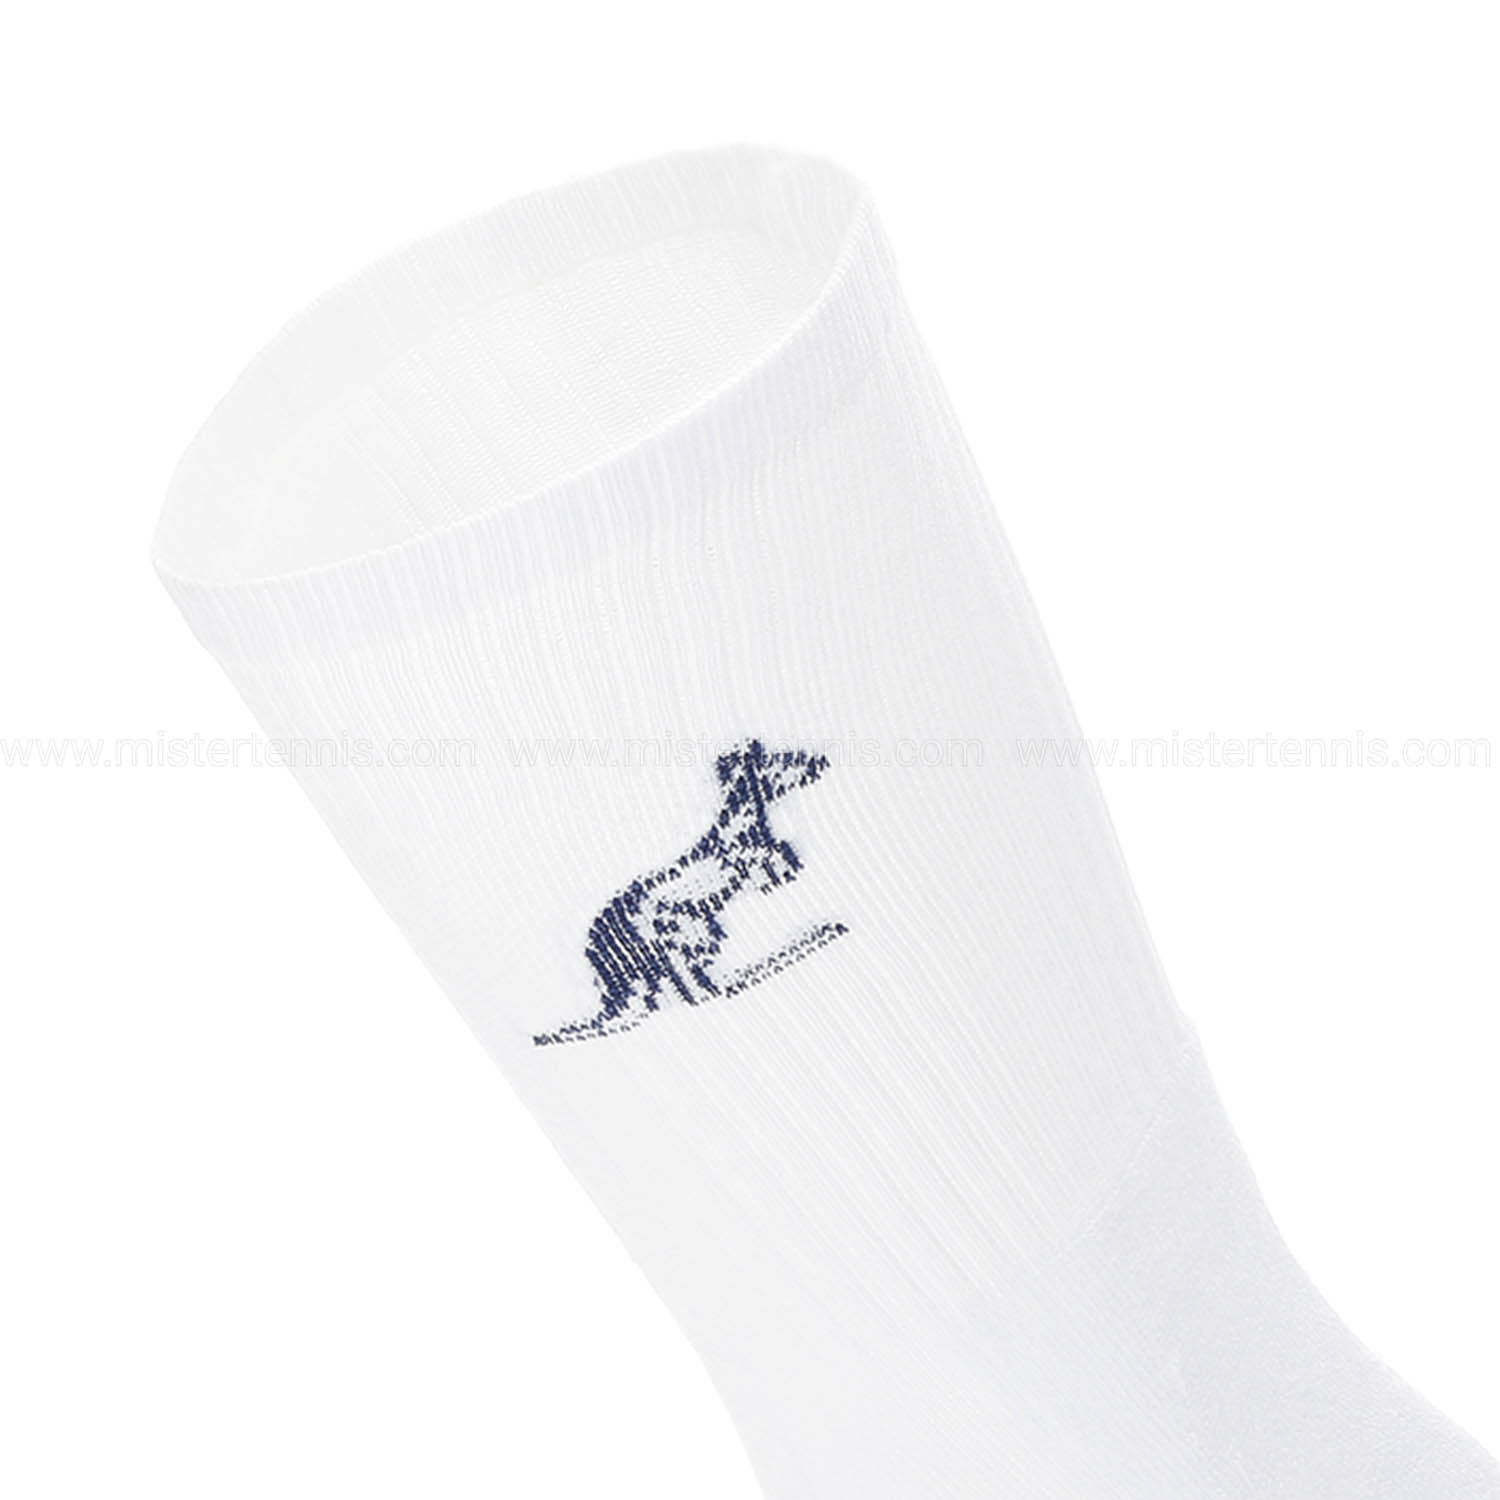 Australian Performance Socks - White/Navy Blue